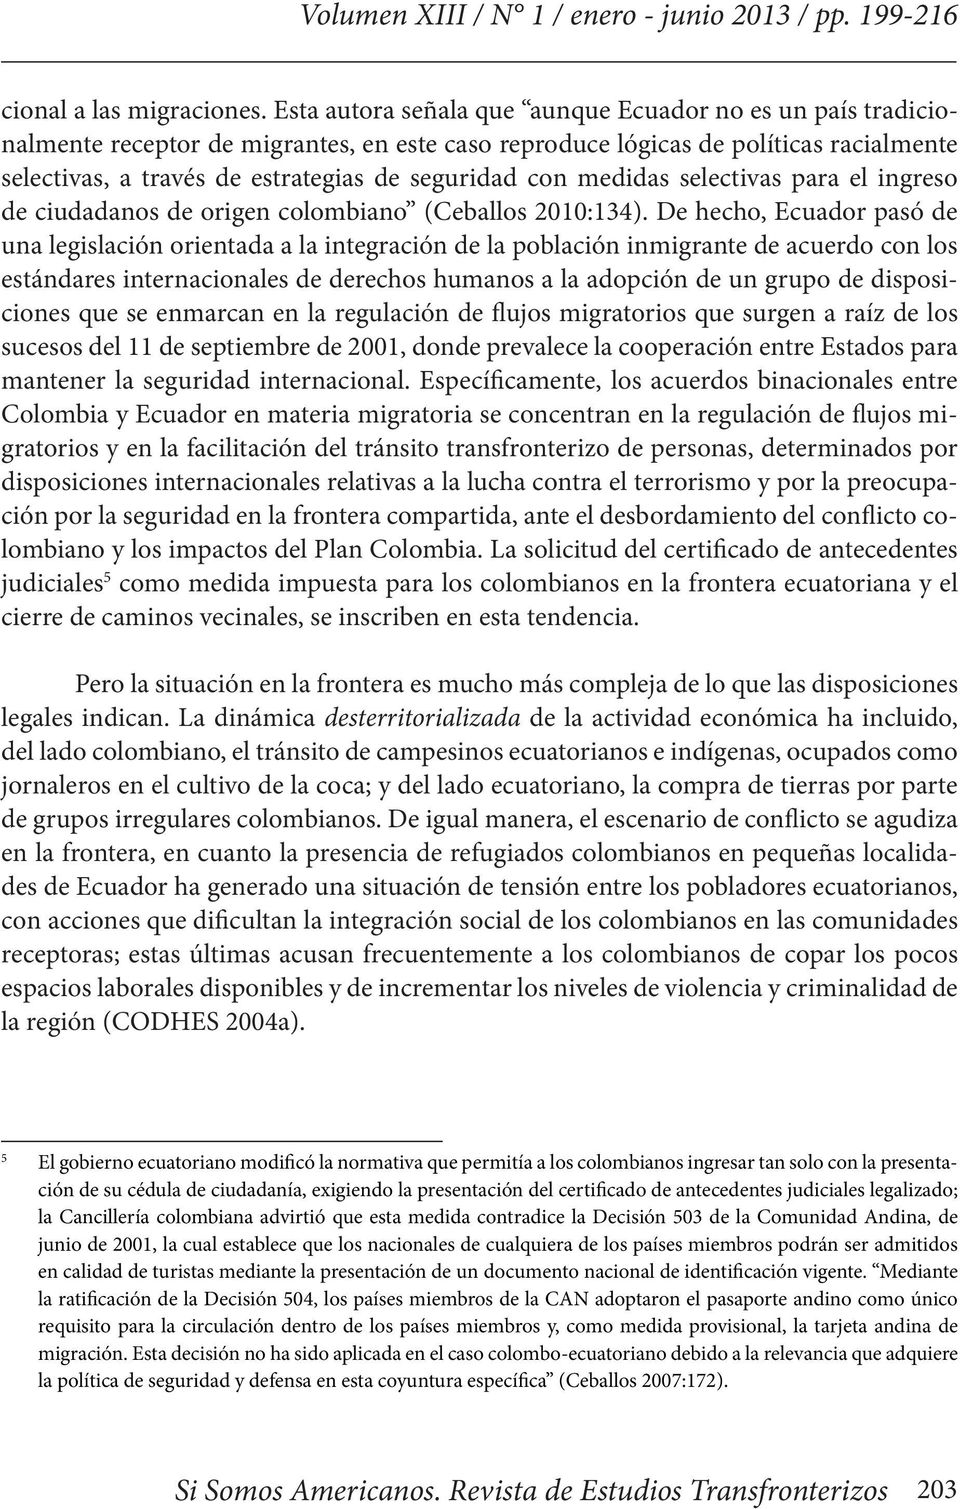 con medidas selectivas para el ingreso de ciudadanos de origen colombiano (Ceballos 2010:134).